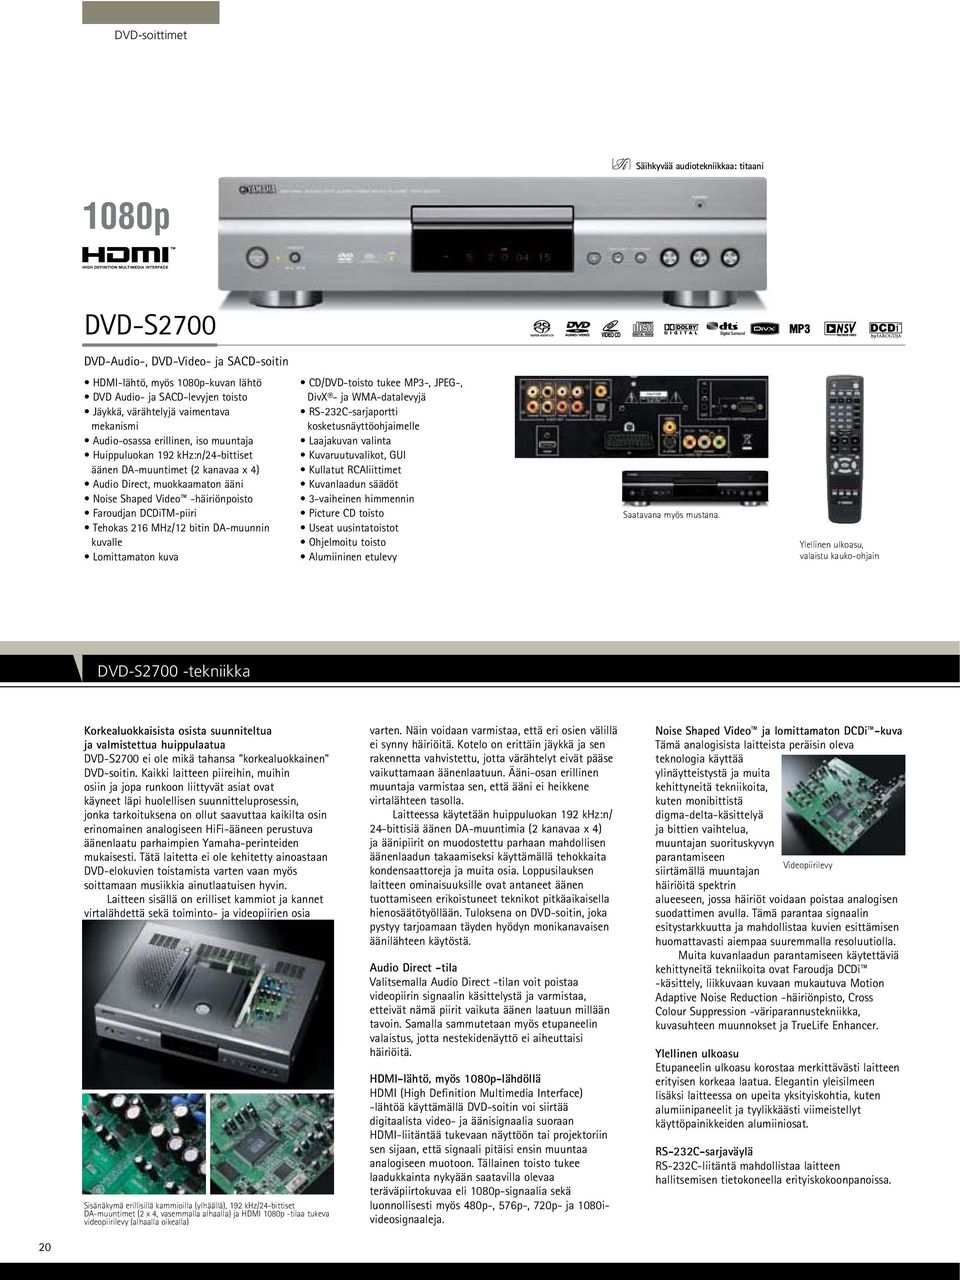 Faroudjan DCDiTM-piiri Tehokas 216 MHz/12 bitin DA-muunnin kuvalle Lomittamaton kuva CD/DVD-toisto tukee MP3-, JPEG-, DivX - ja WMA-datalevyjä RS-232C-sarjaportti kosketusnäyttöohjaimelle Laajakuvan